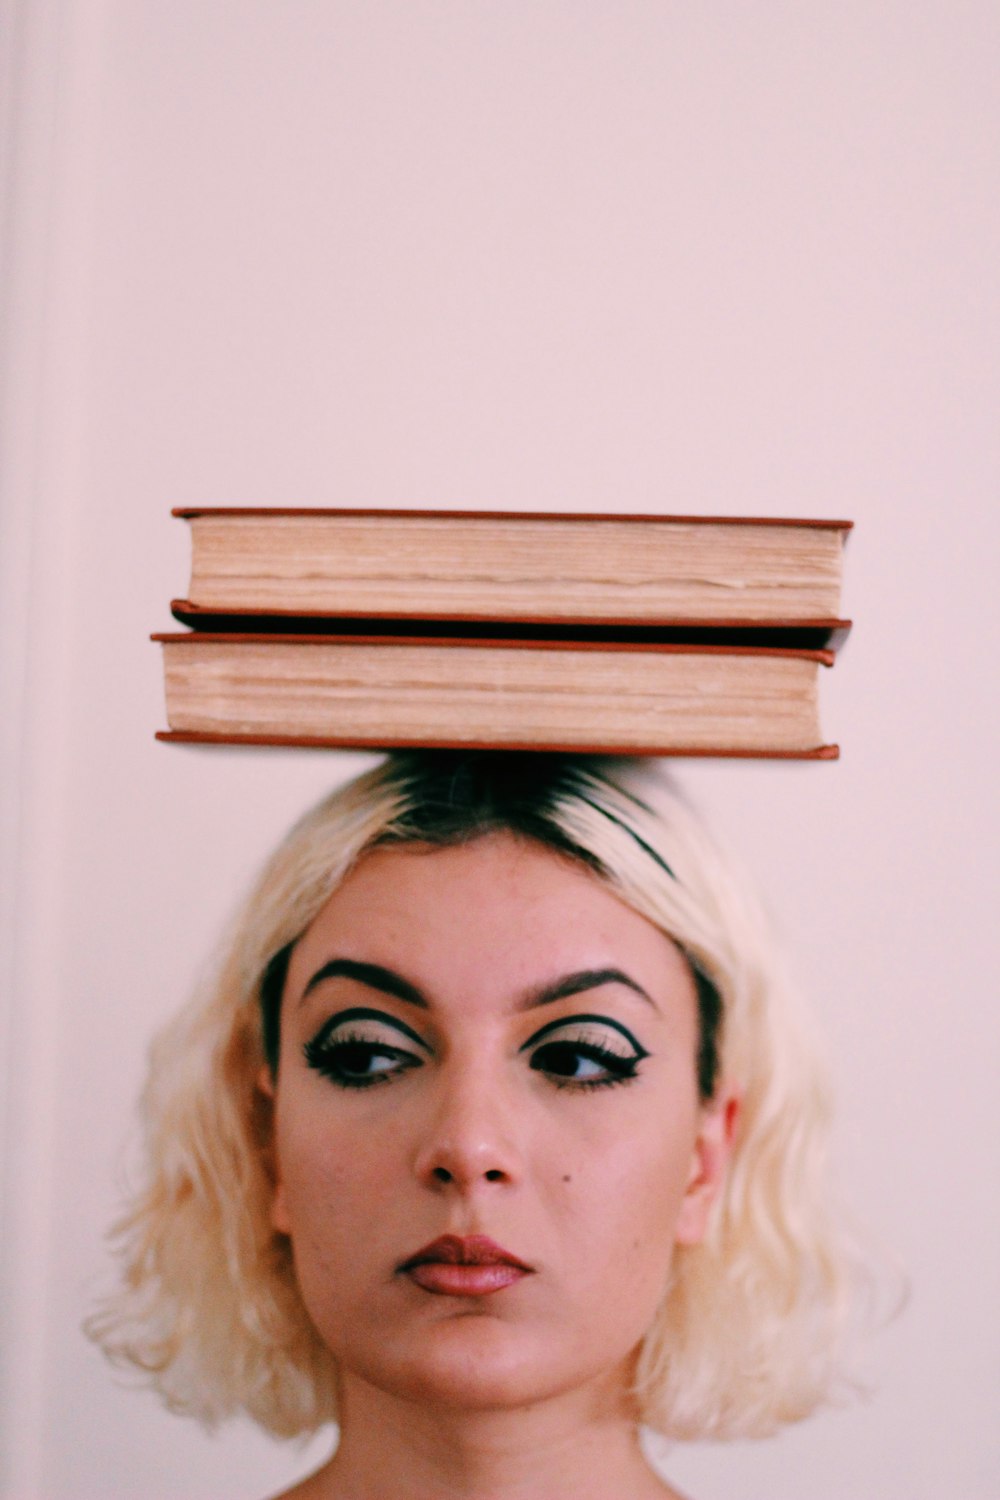 deux livres sur le dessus de la tête d’une femme